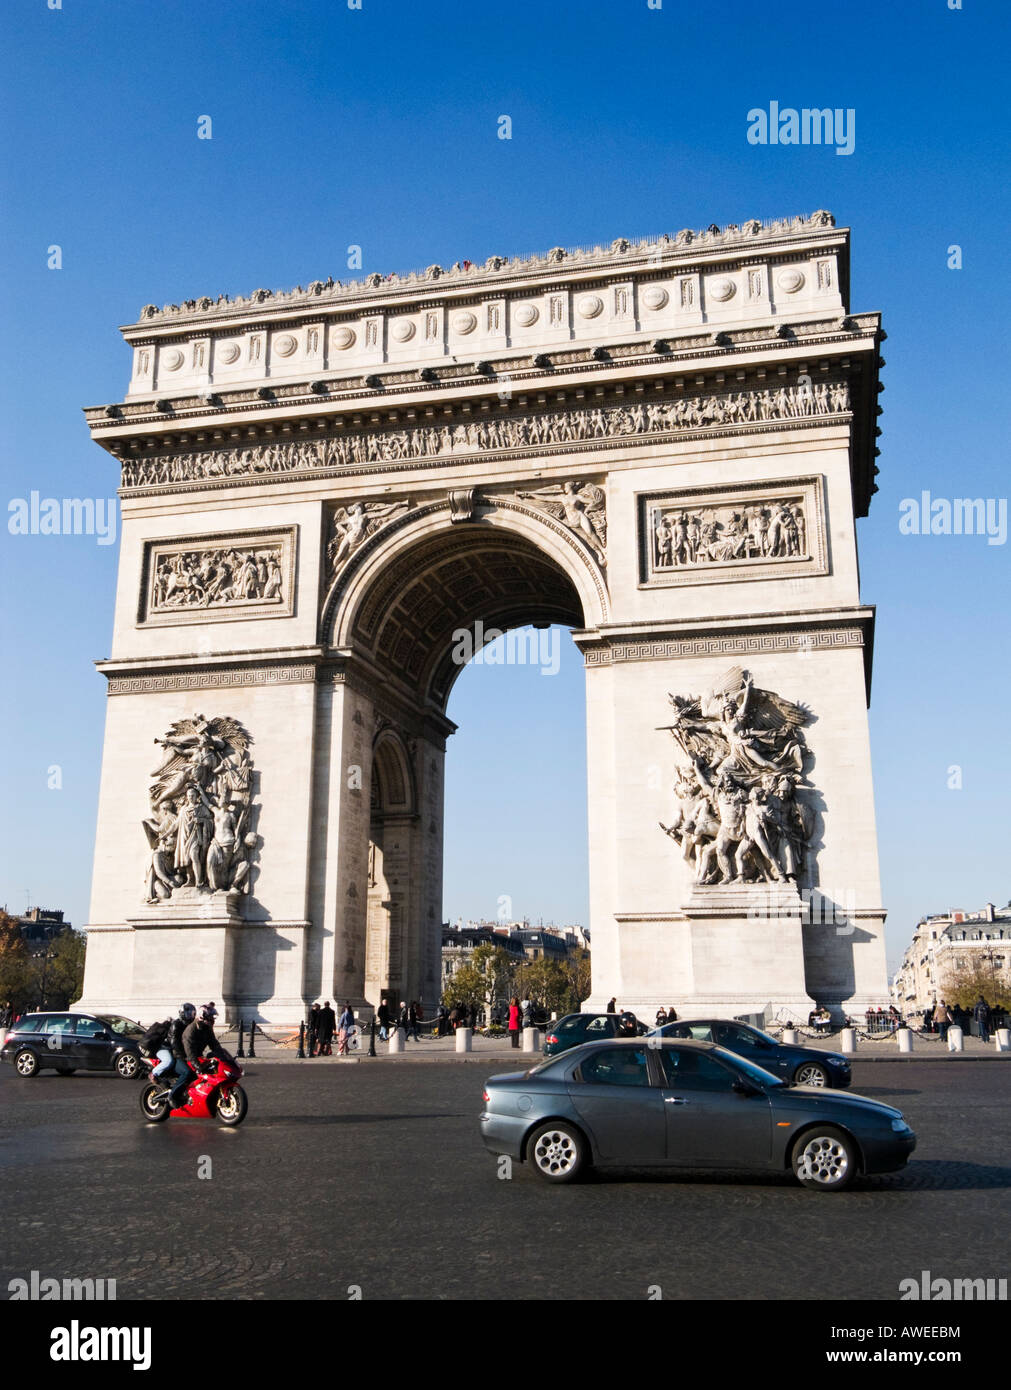 París, Francia: El Arco del Triunfo con automóviles circulando alrededor de él Foto de stock